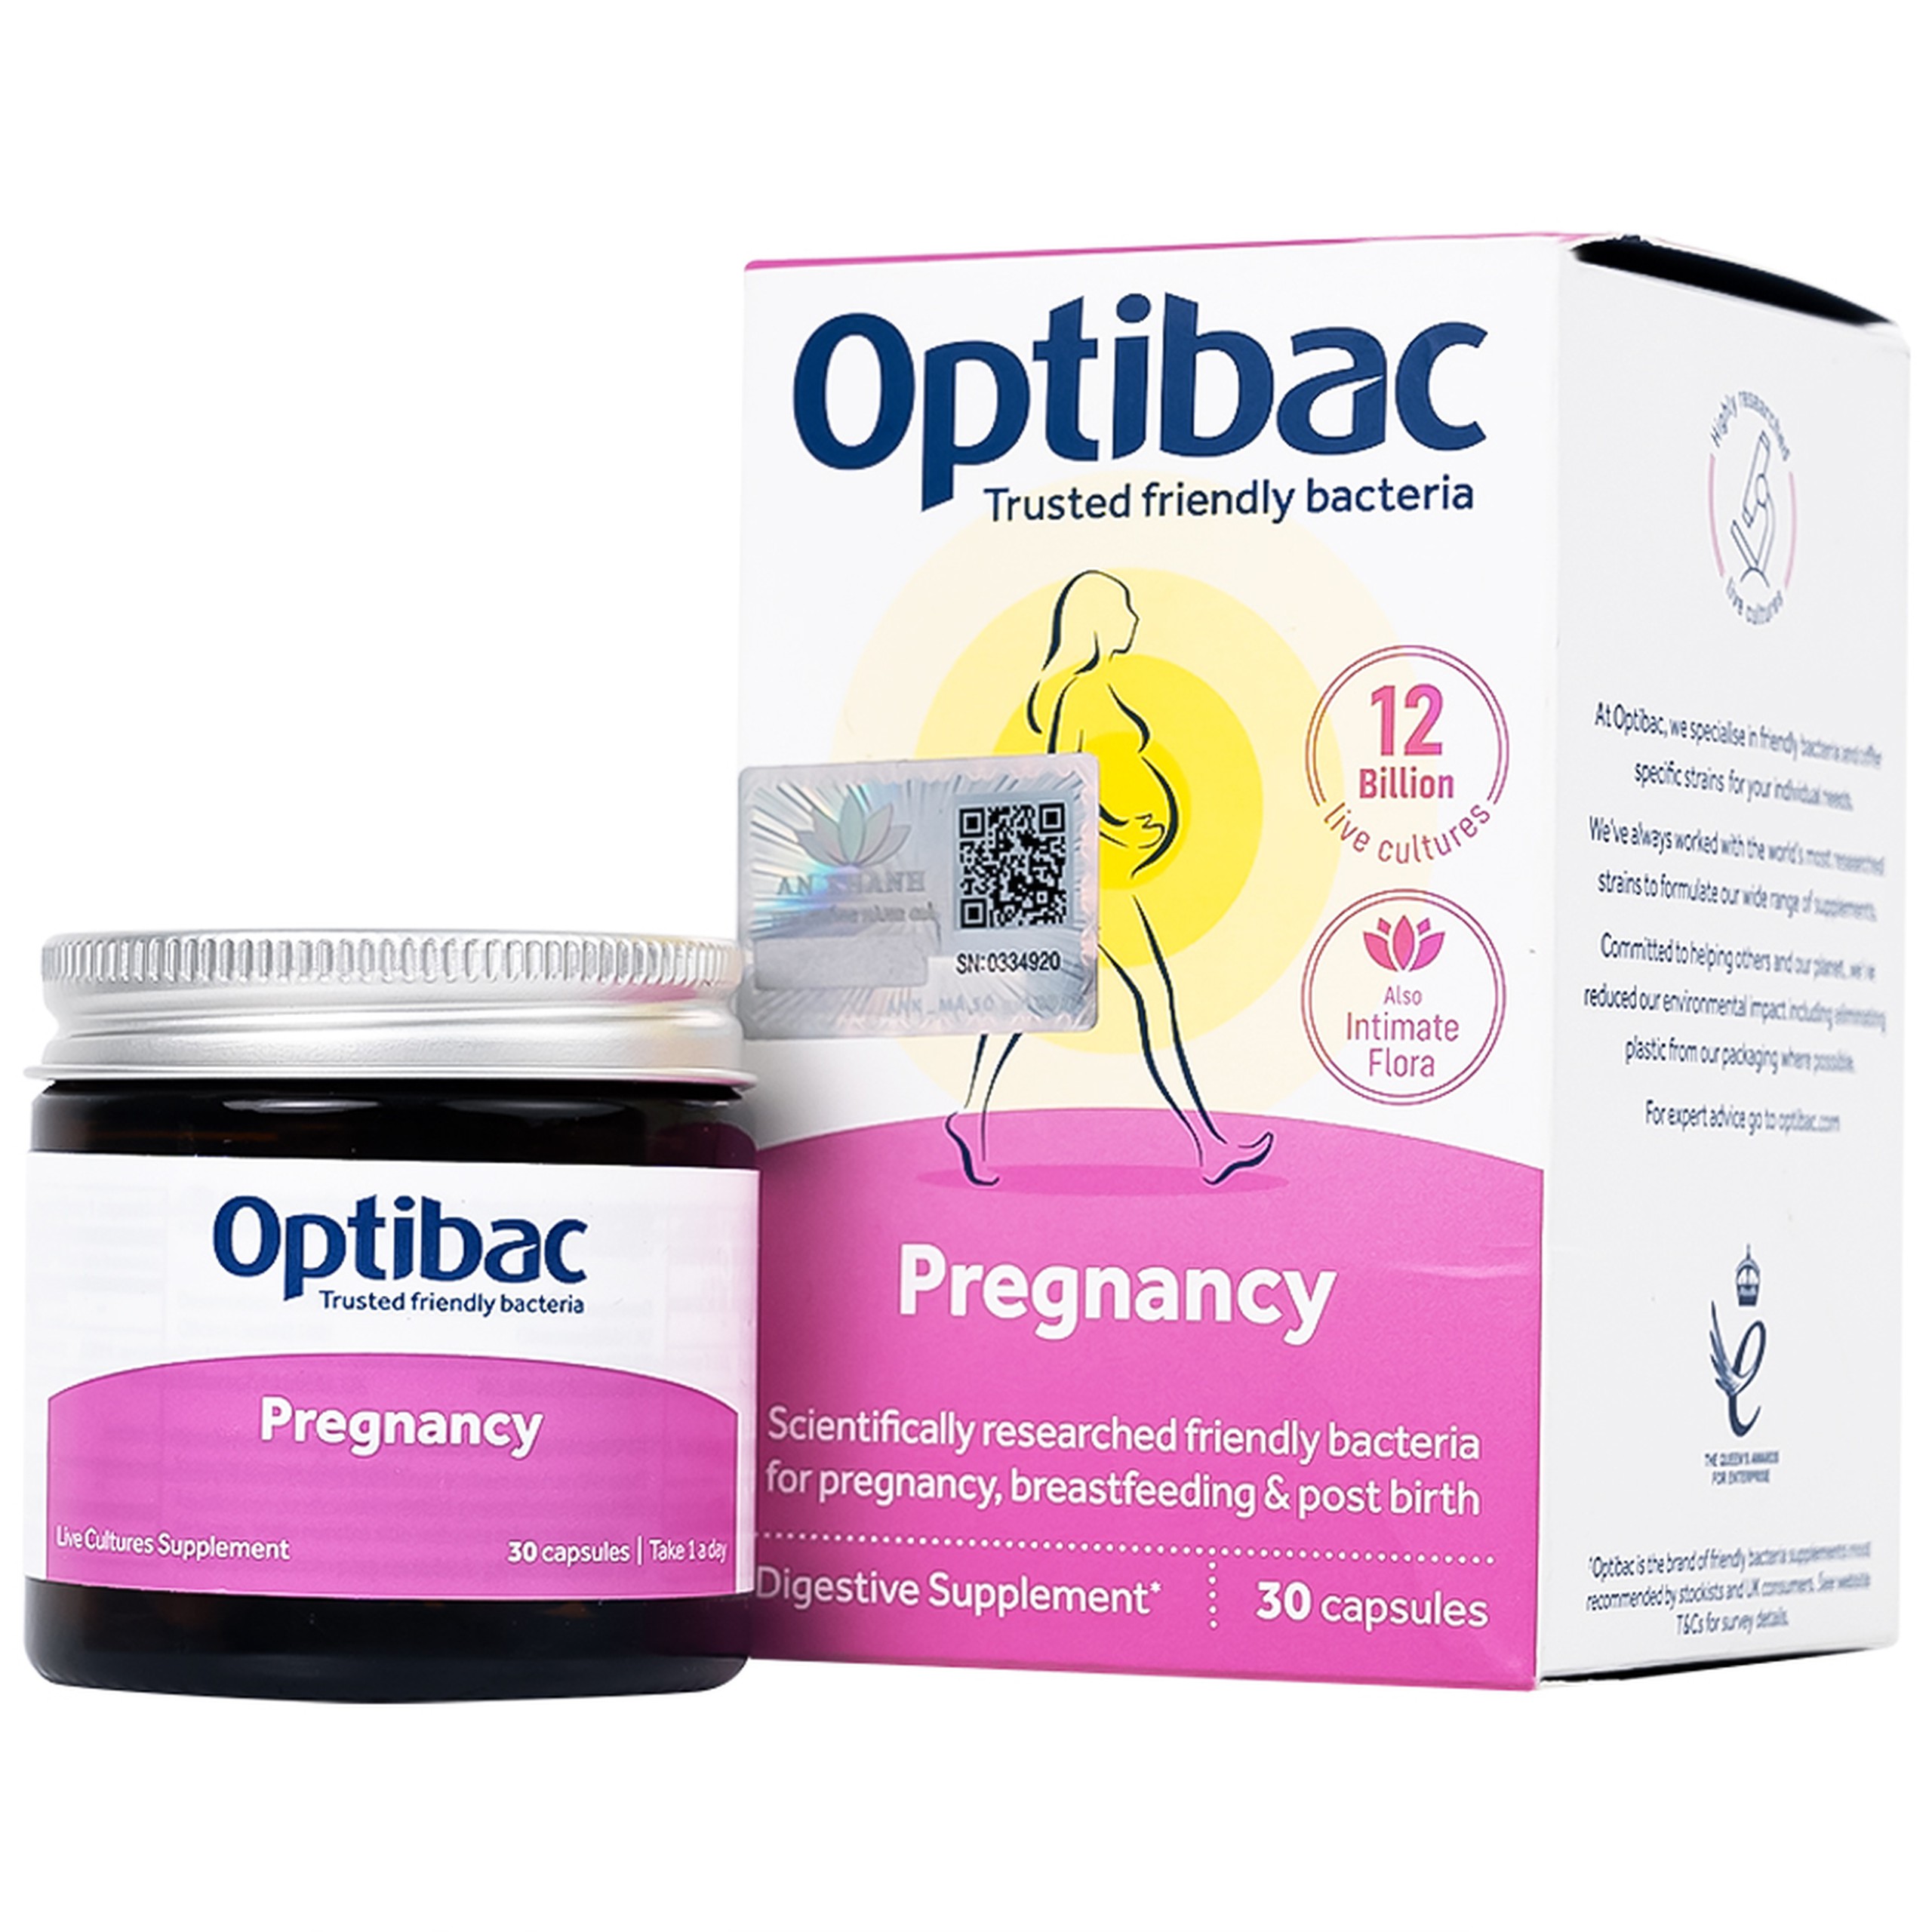 Viên uống Optibac Pregnancy bổ sung lợi khuẩn cho đường ruột, hỗ trợ tiêu hóa (30 viên)